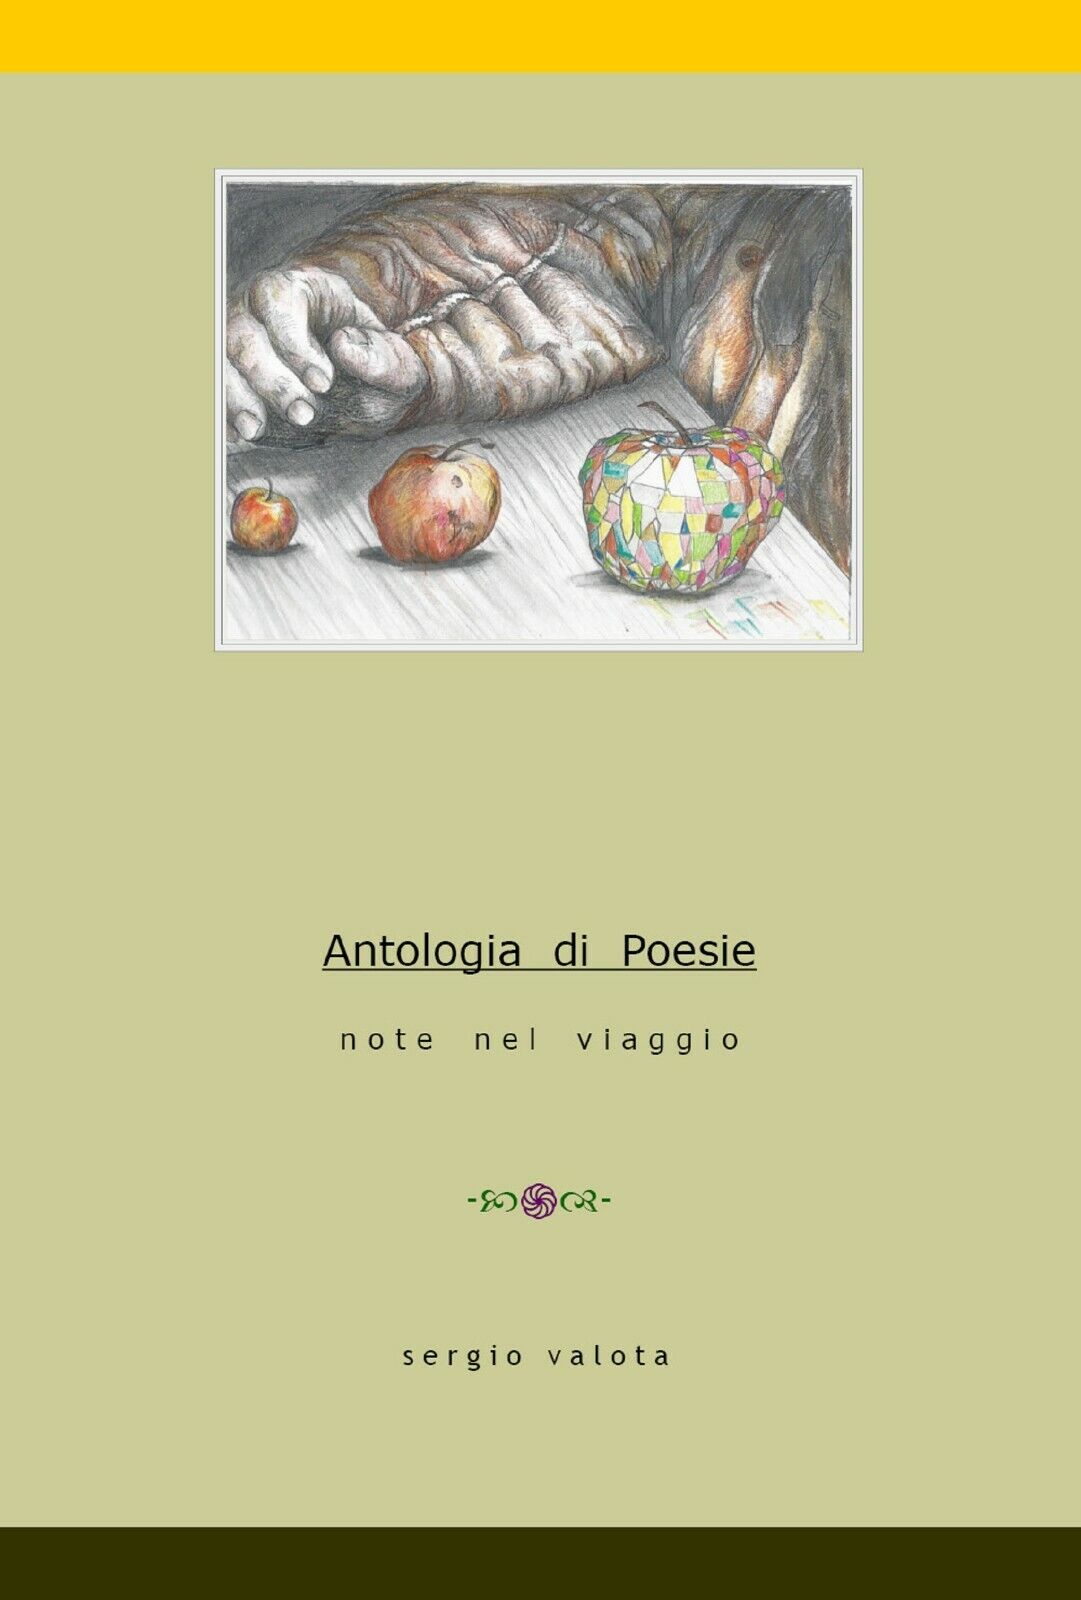 Antologia di poesie. Note nel viaggio di Sergio Valota,  2017,  Youcanprint